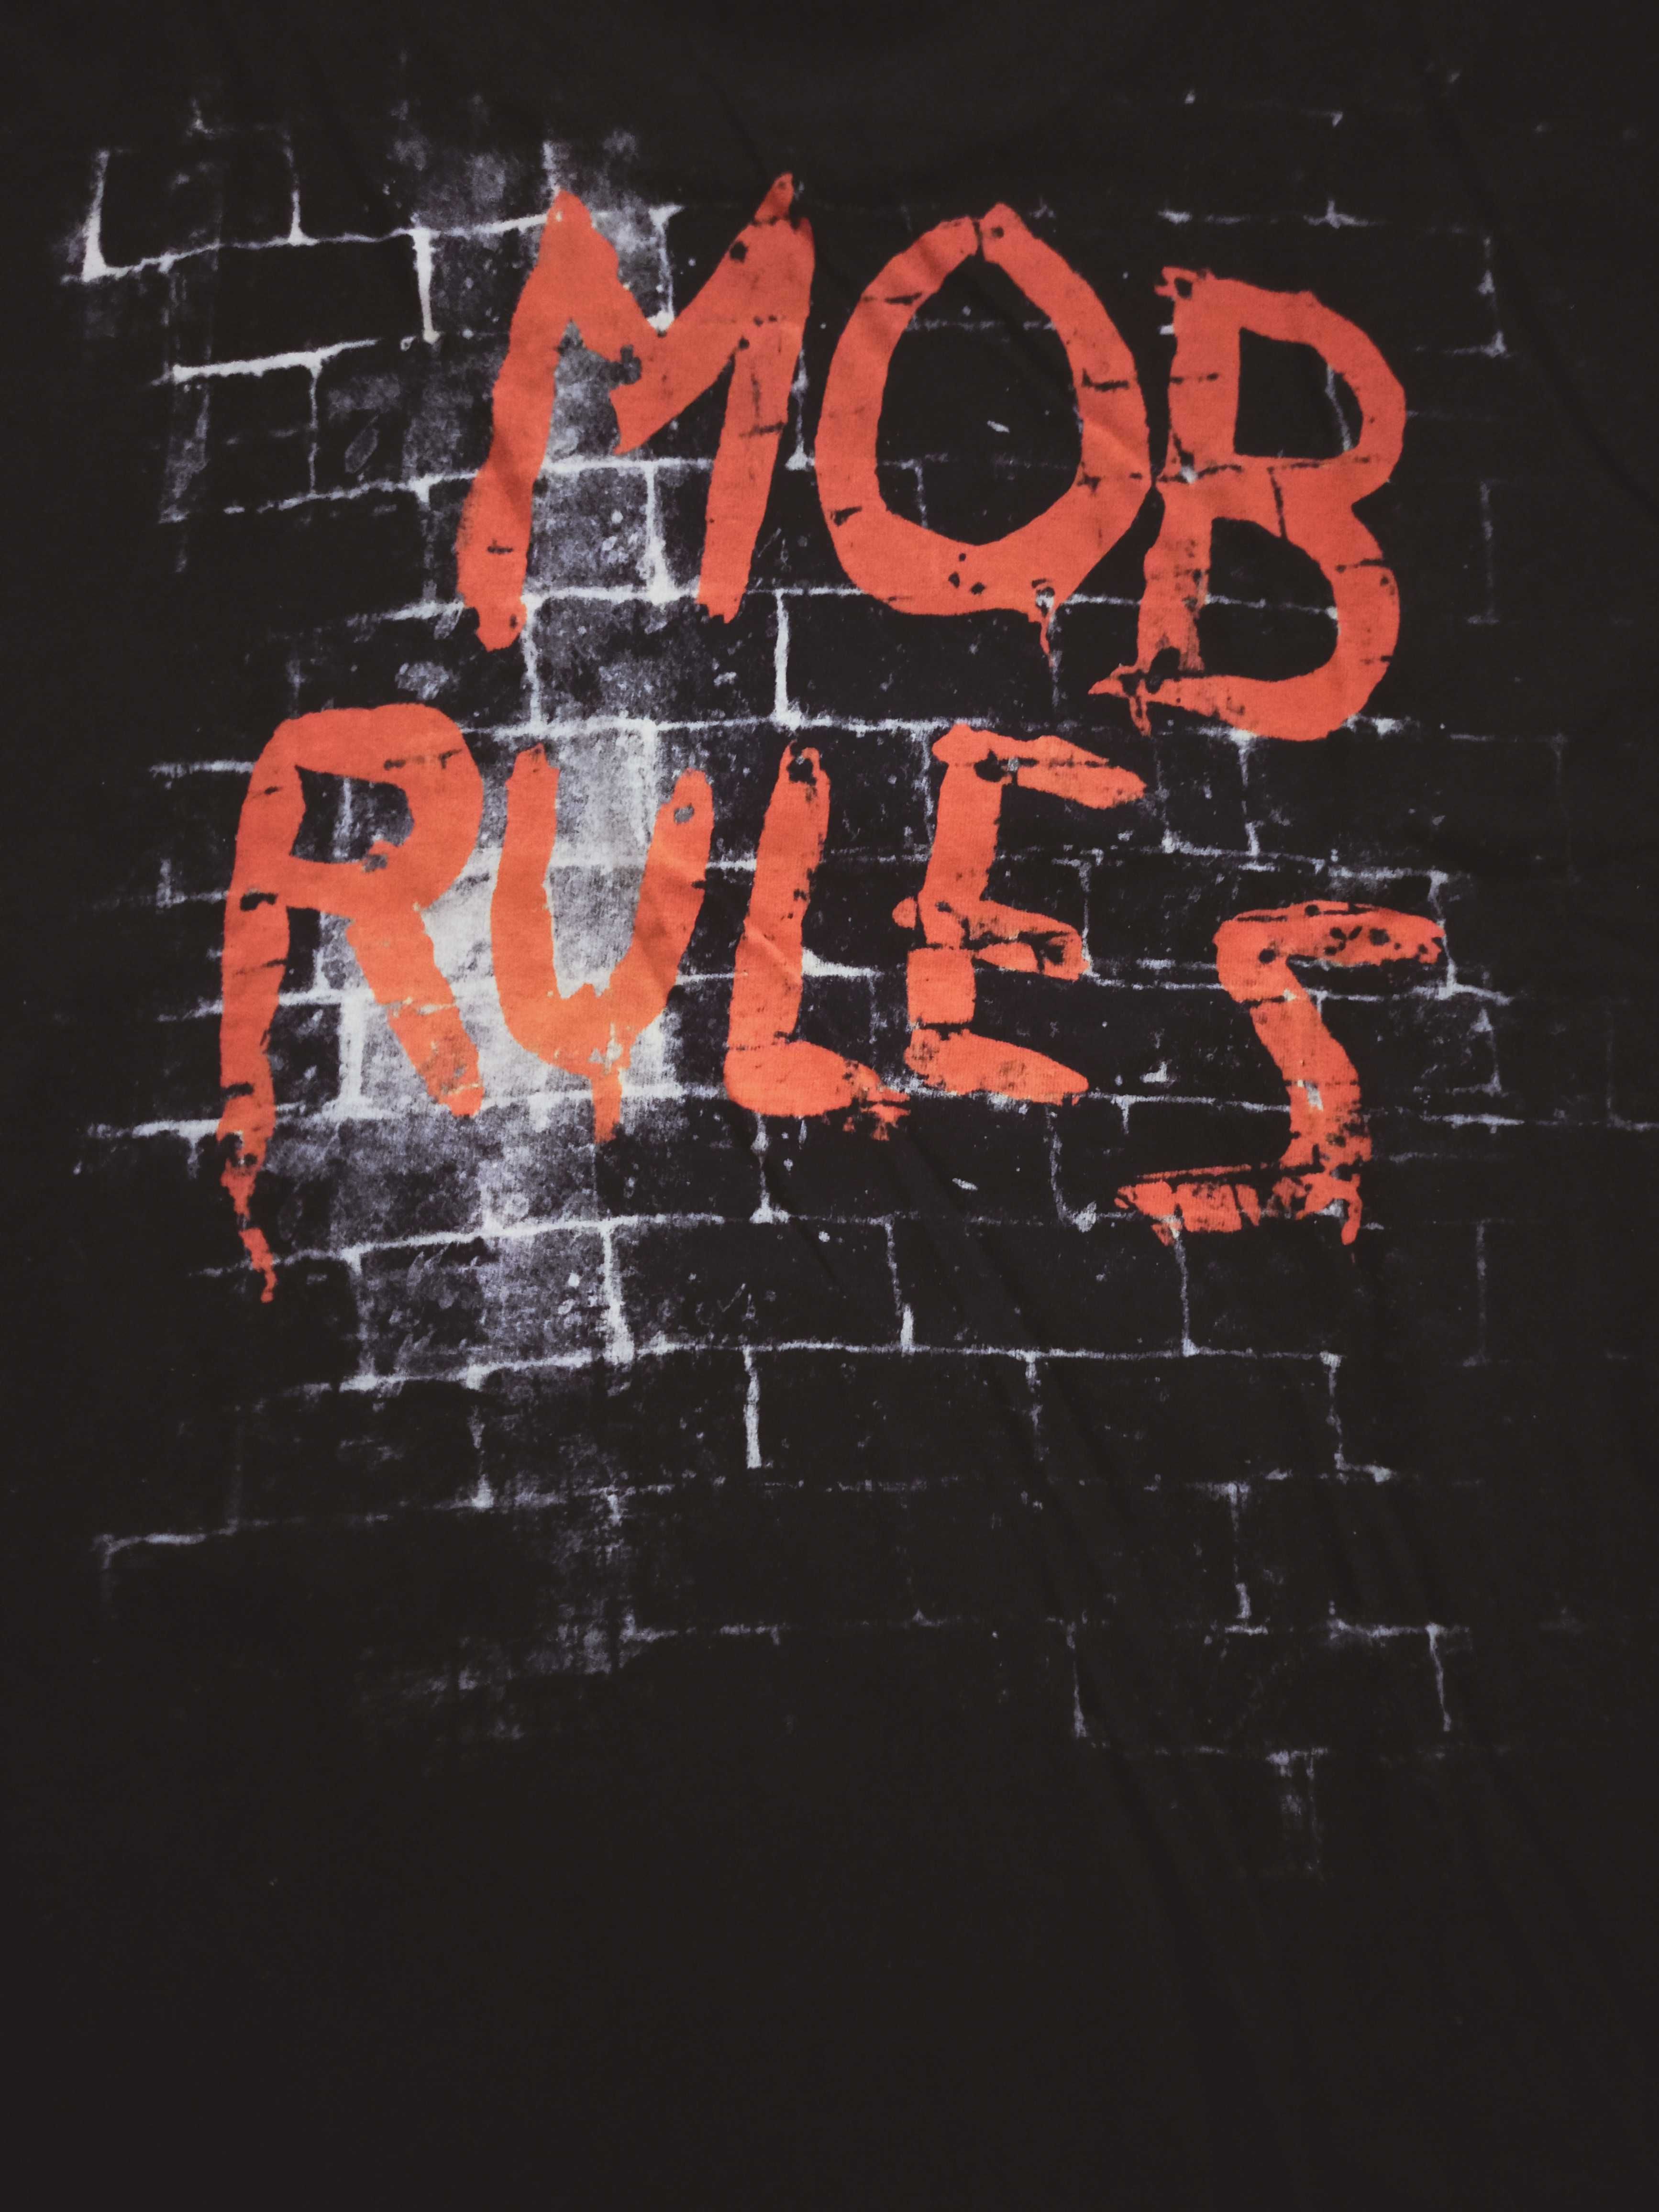 Black Sabbath Mob Rules мерч рок футболка двусторонний принт размер L